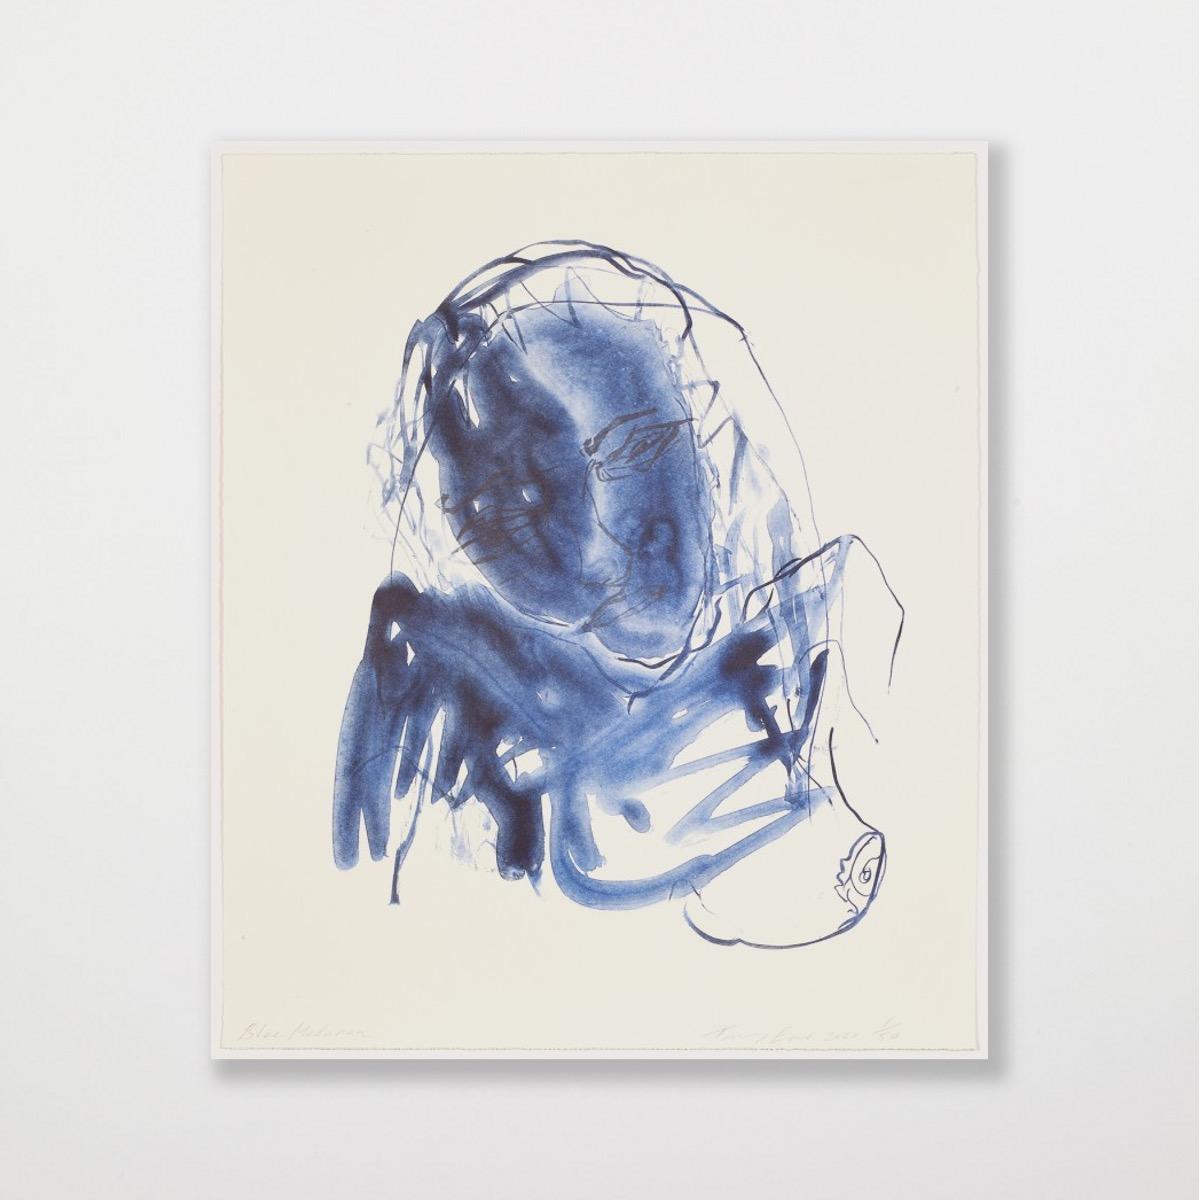 Blue Madonna - Emin, Contemporain, YBAs, Lithographie, Portrait, Noir